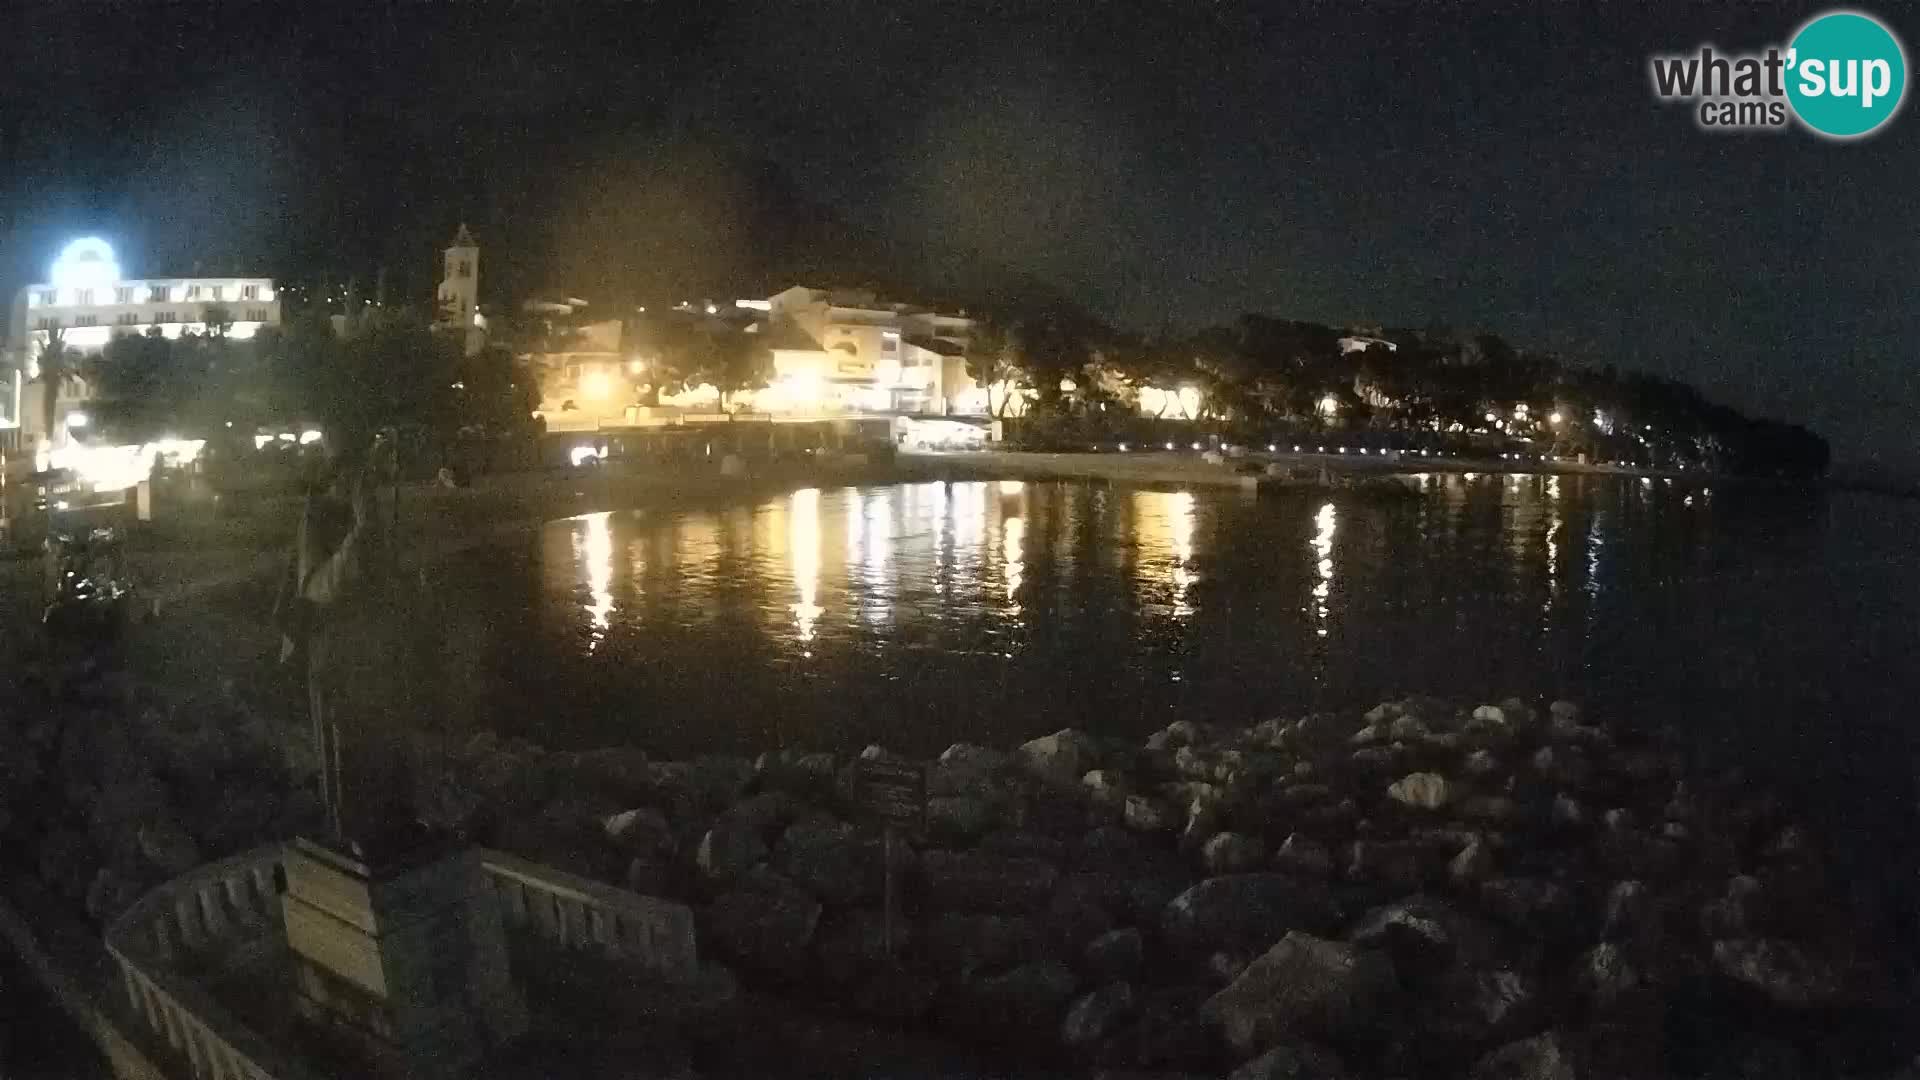 Web kamera Baška Voda – Sv. Nikola i plaža